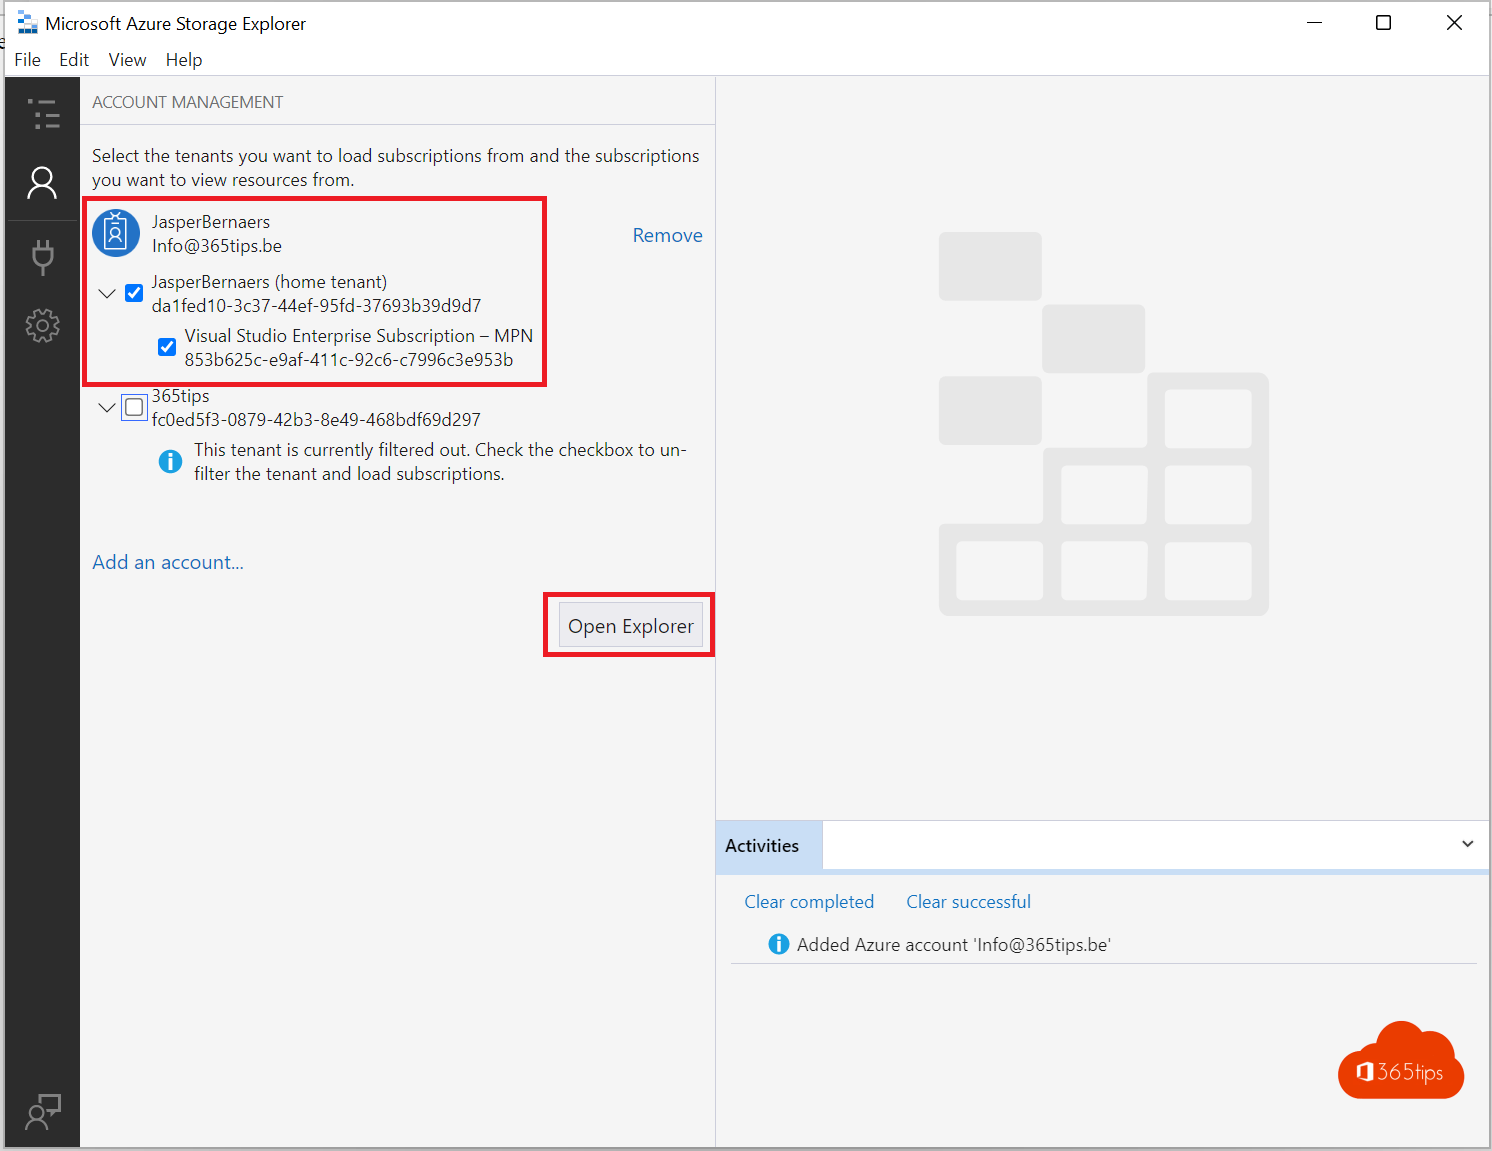 Tutorial: ¿Cómo descargar el explorador de almacenamiento de Microsoft Azure?